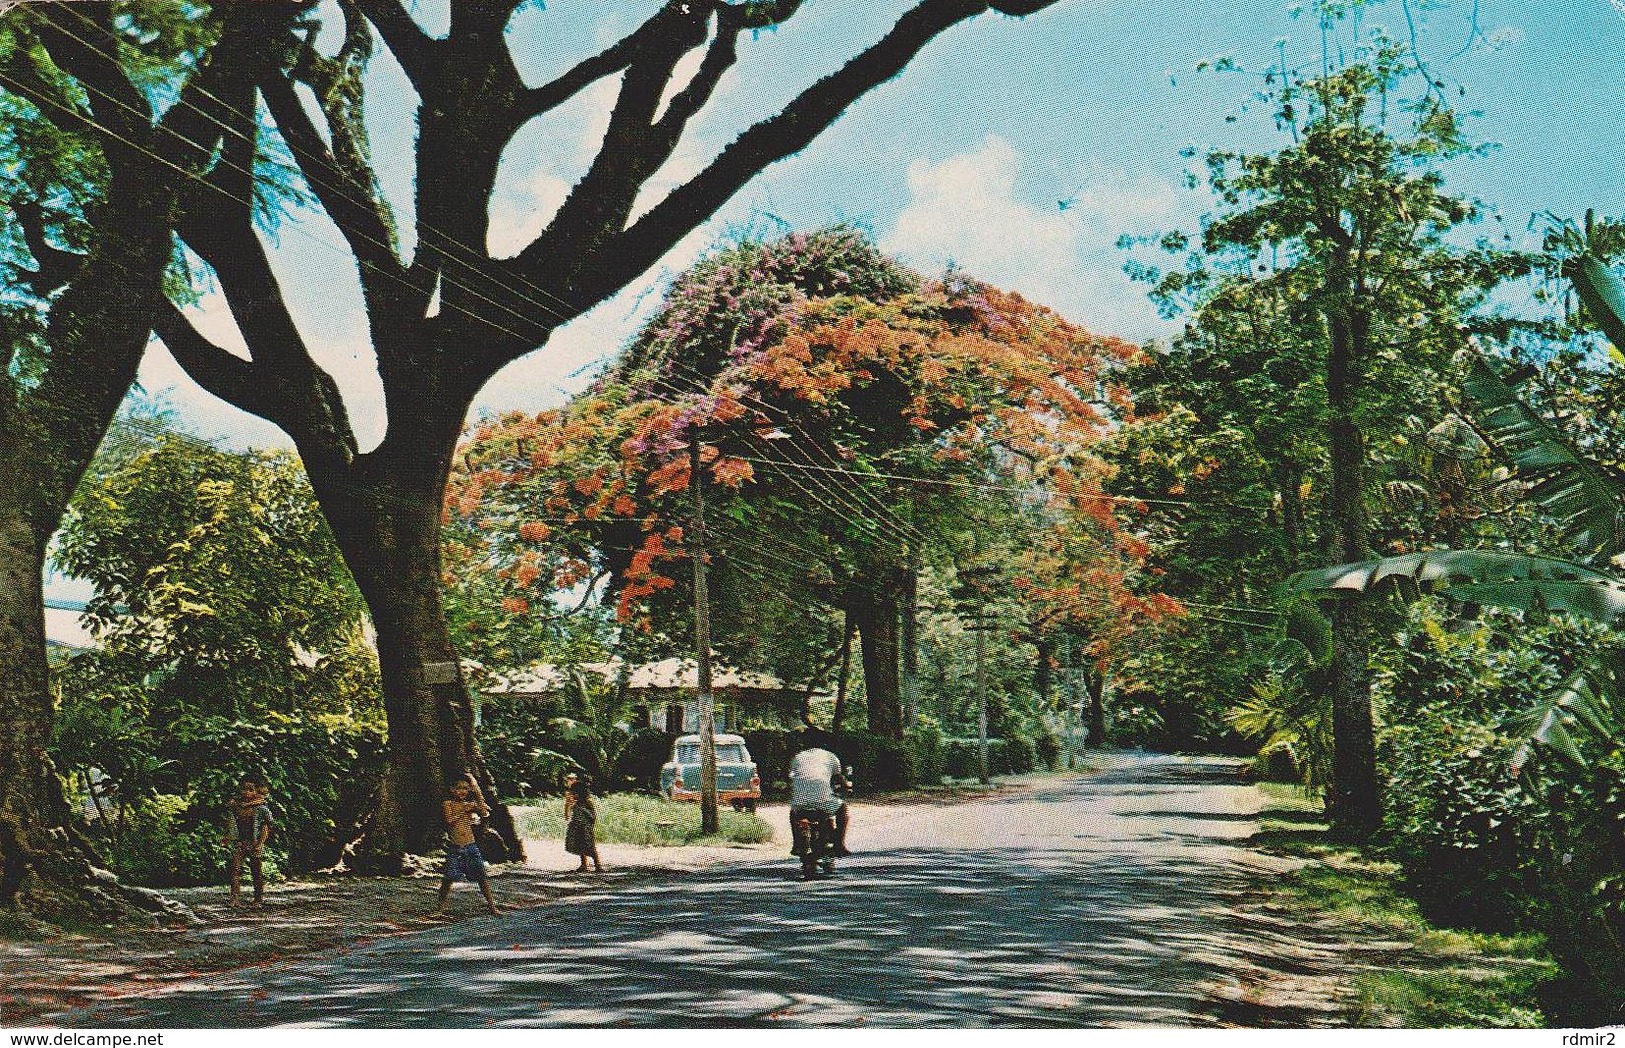 [VD.19] RAROTONGA, Cook Islands, Mainroad At Tupapa. Postal Escrita Al Dorso / Carte écrite Au Dos [1972]. - Isole Cook